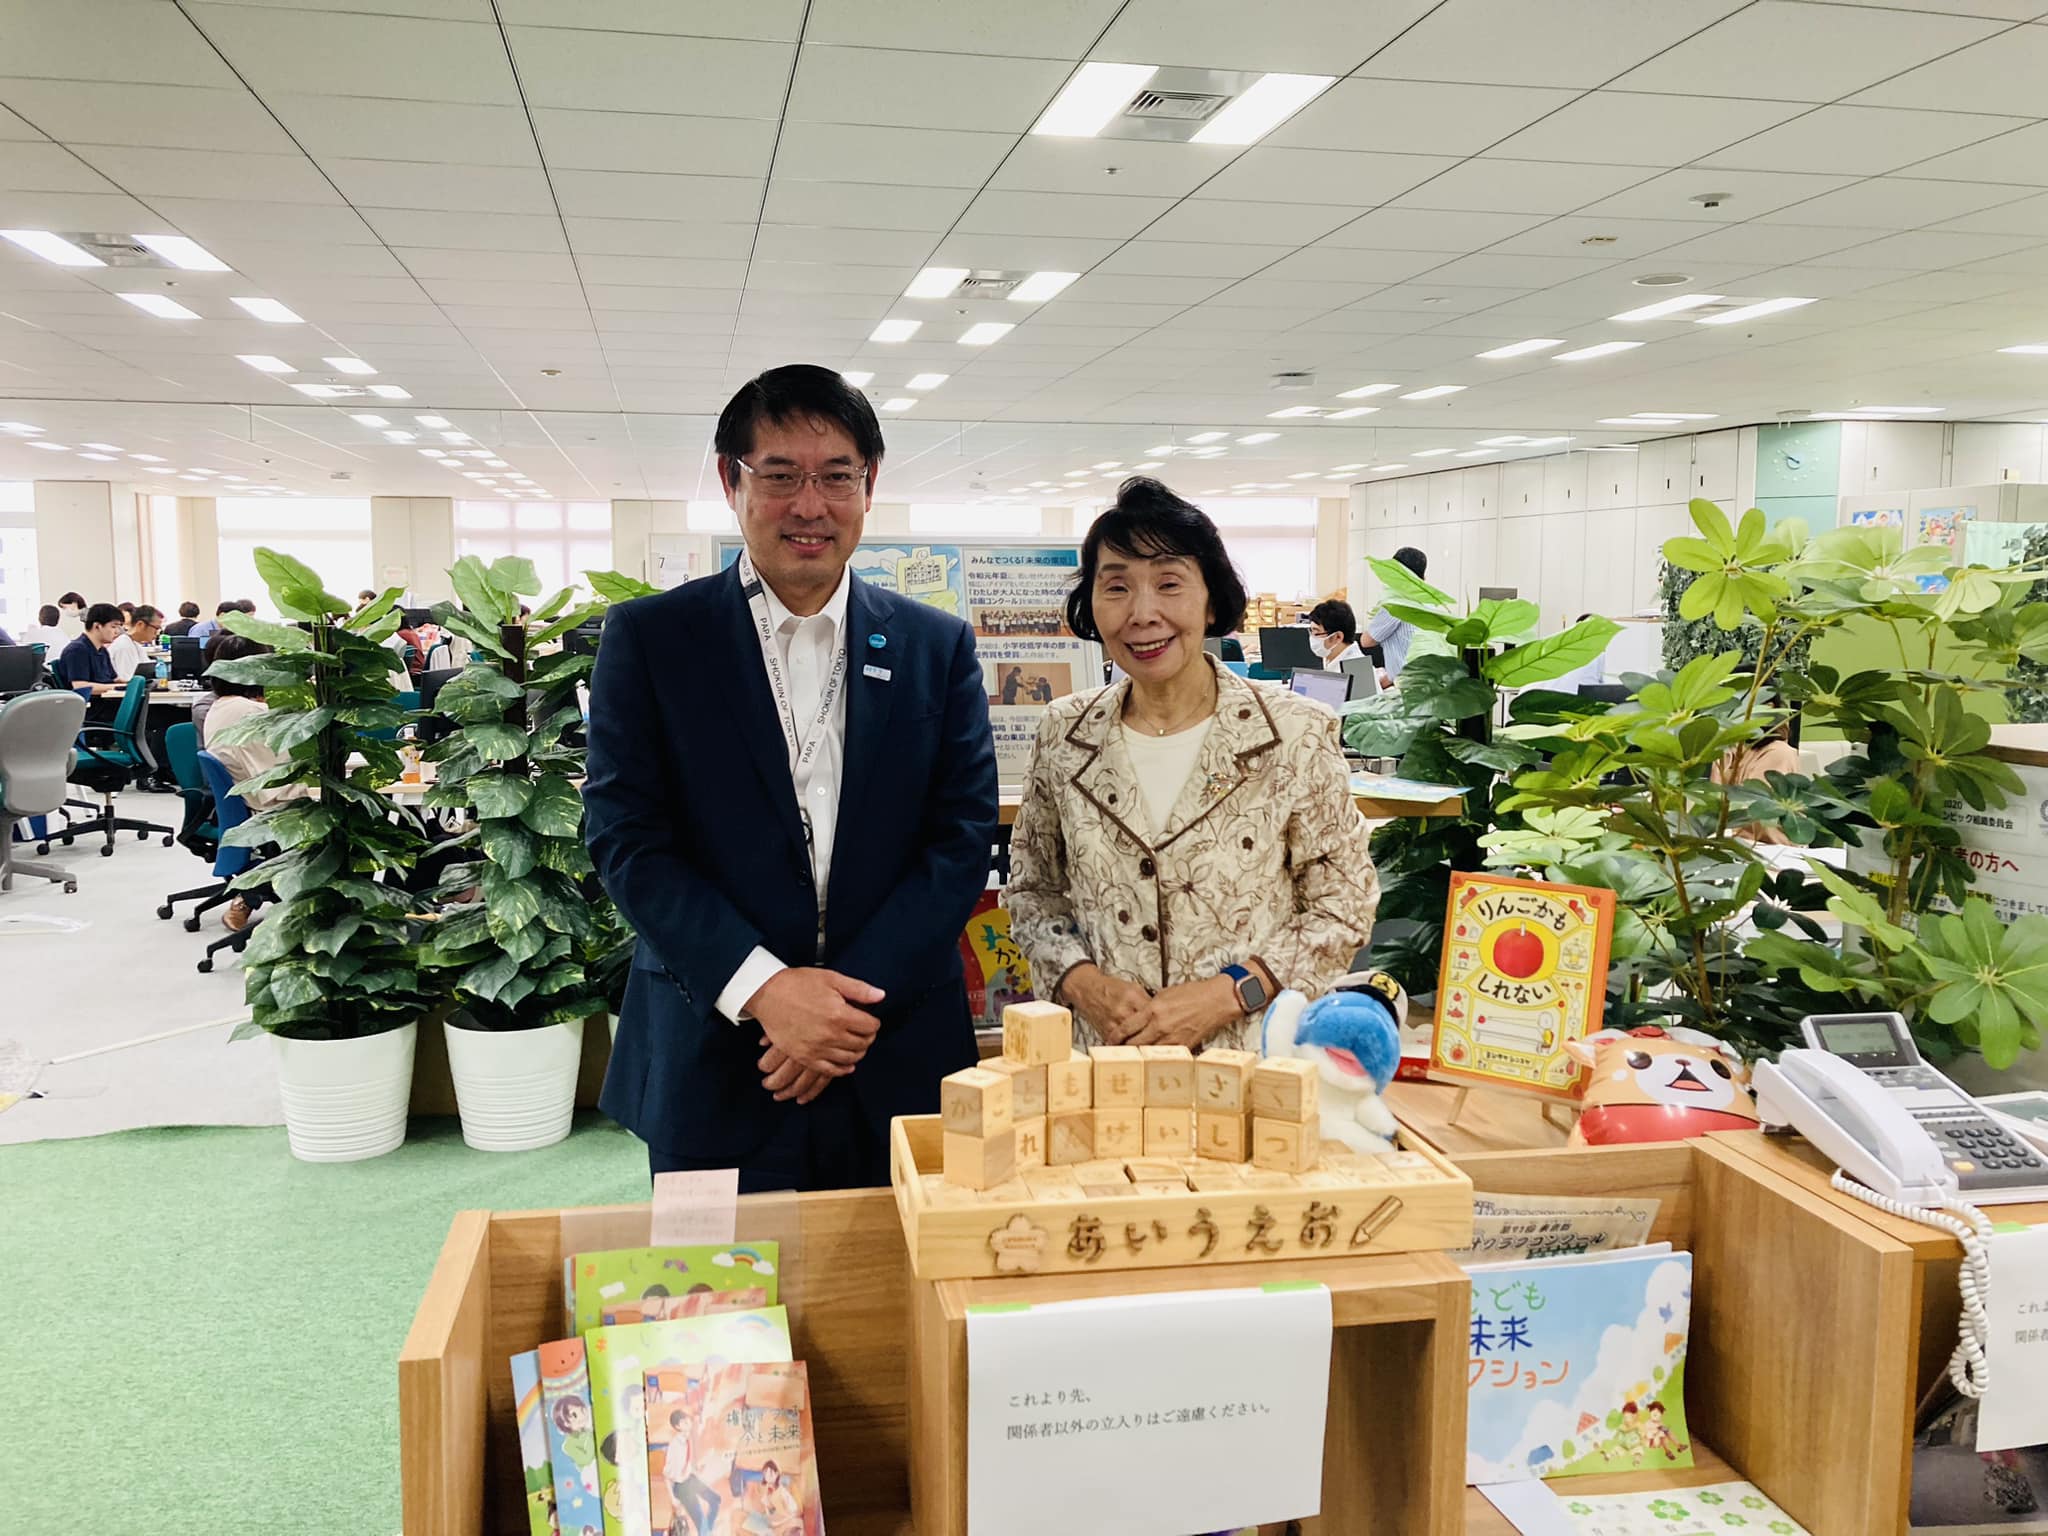 東京都子供政策連携室の田中室長を訪問しました